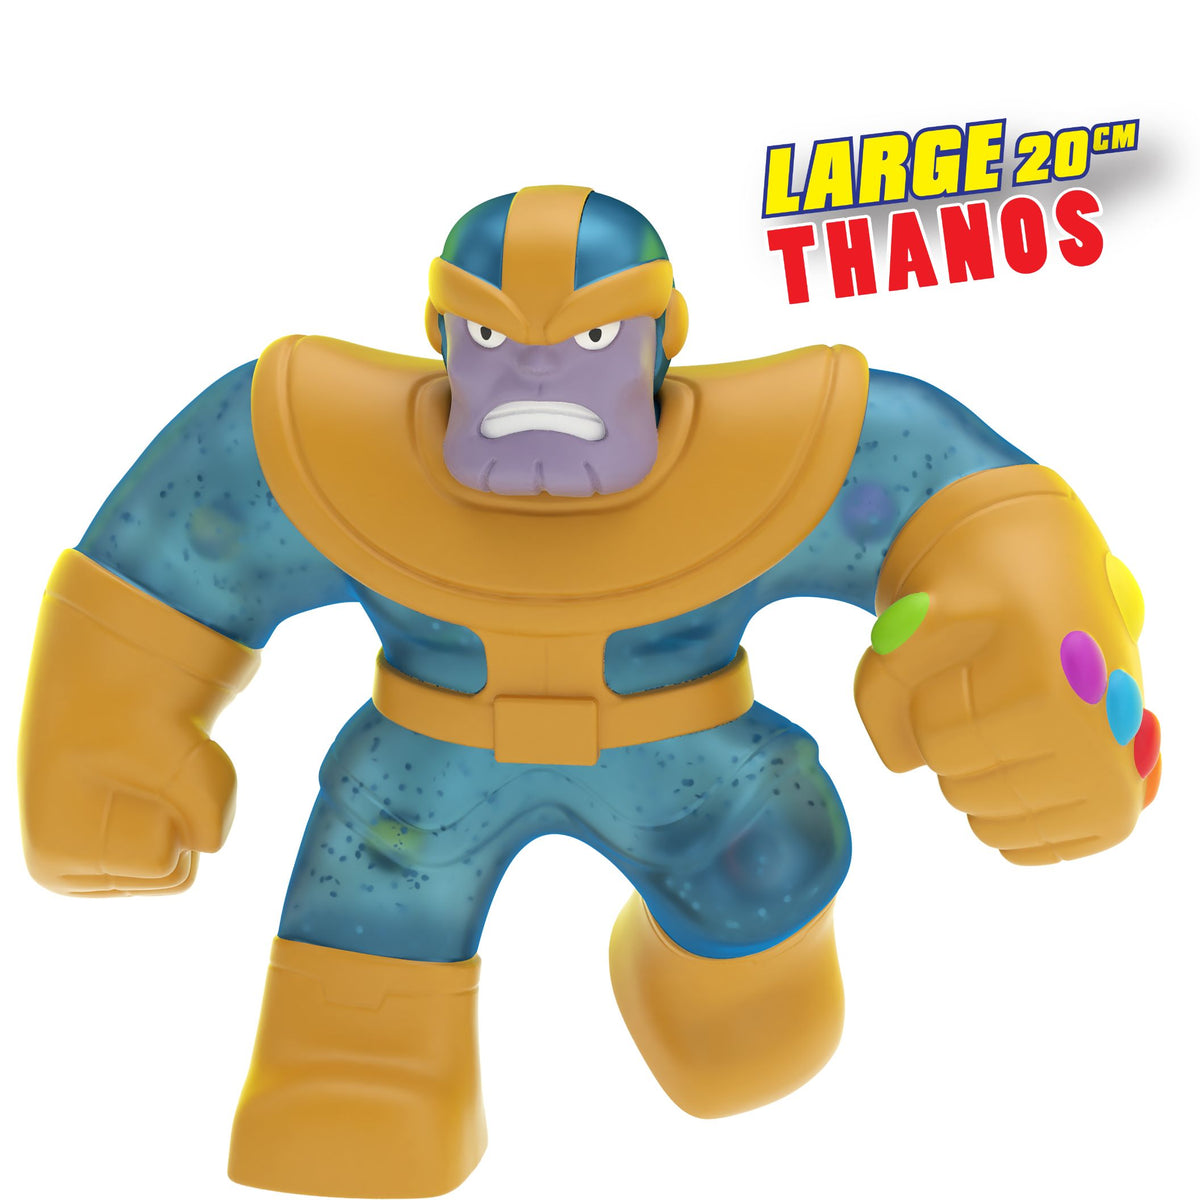 Marvel Incredible Hulk Large